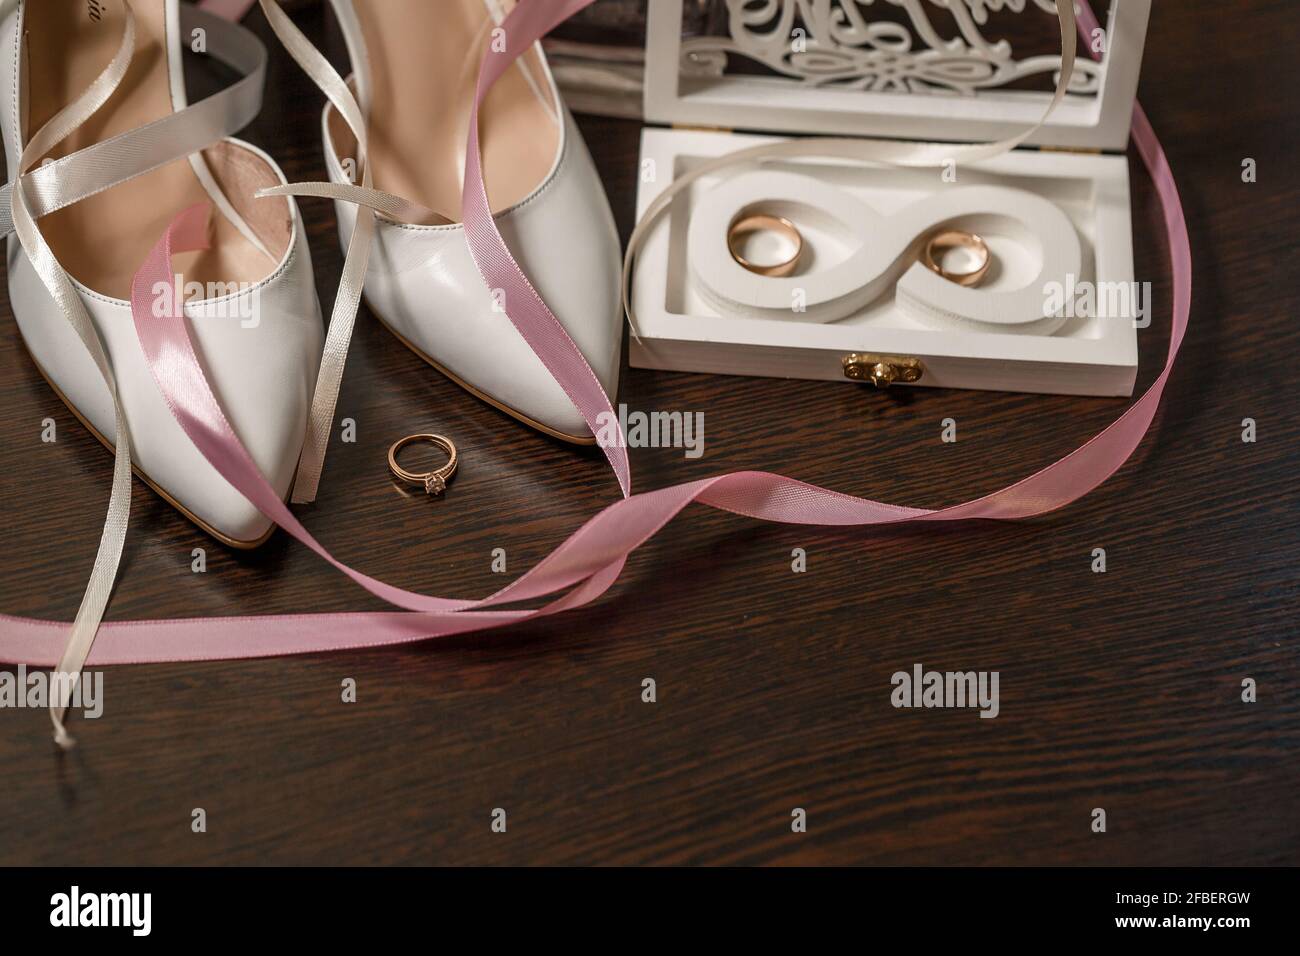 Scarpe da sposa per la sposa. Scarpe bianche con tacco alto vicino agli  anelli per matrimoni, gioielli per matrimoni. Concetto di matrimonio Foto  stock - Alamy